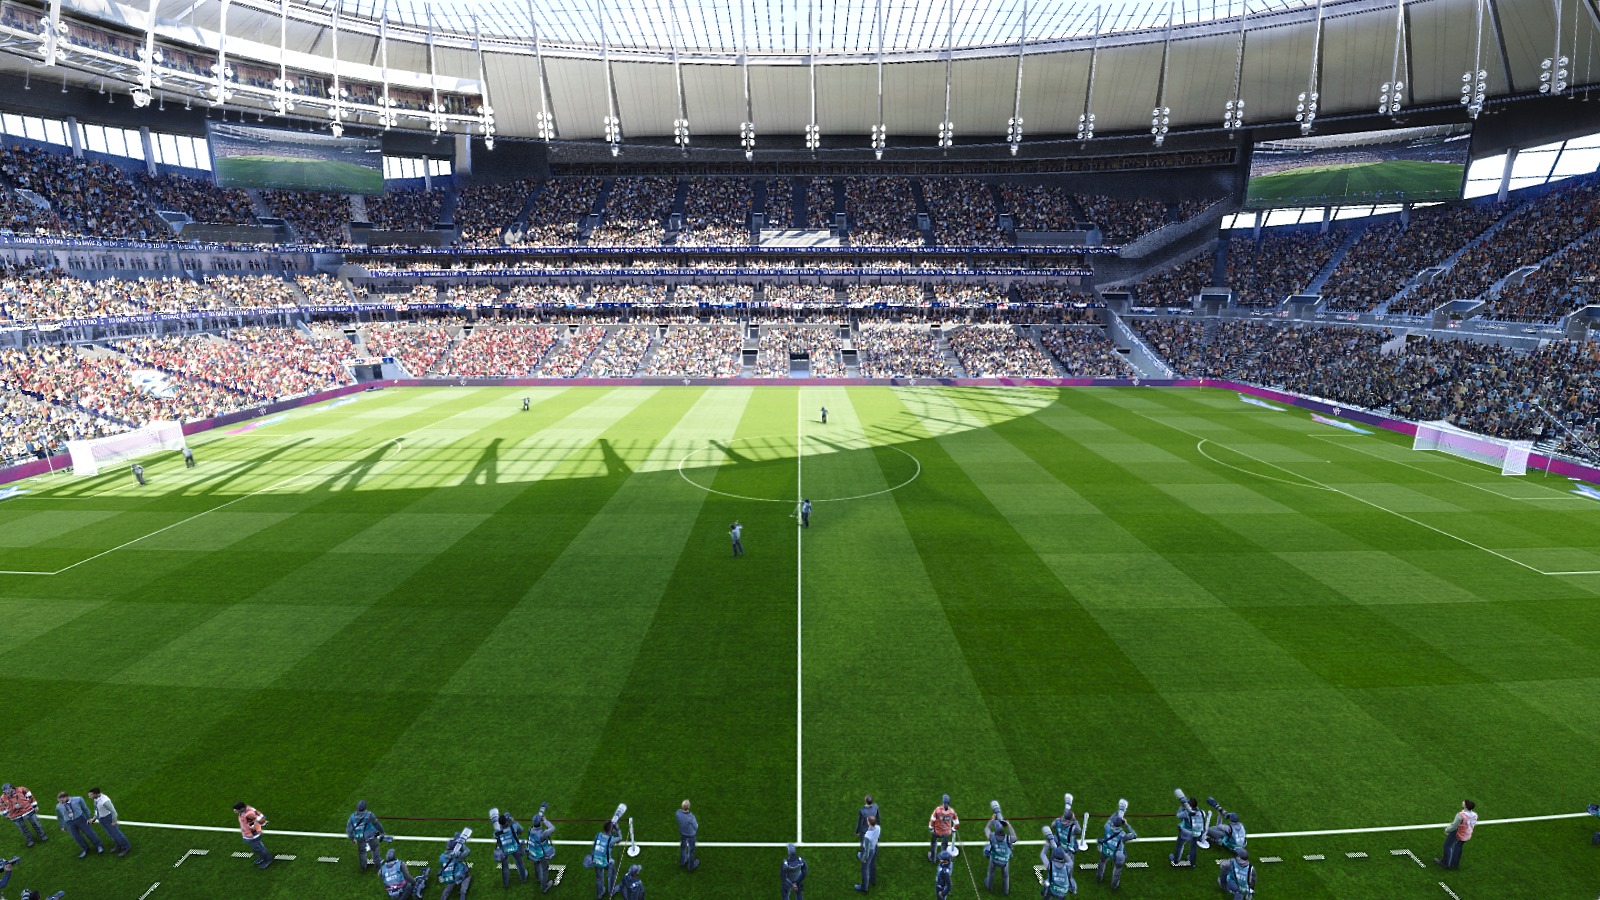 PES 2020 Stadium Tottenham Hotspur + Etihad with Aerial ...